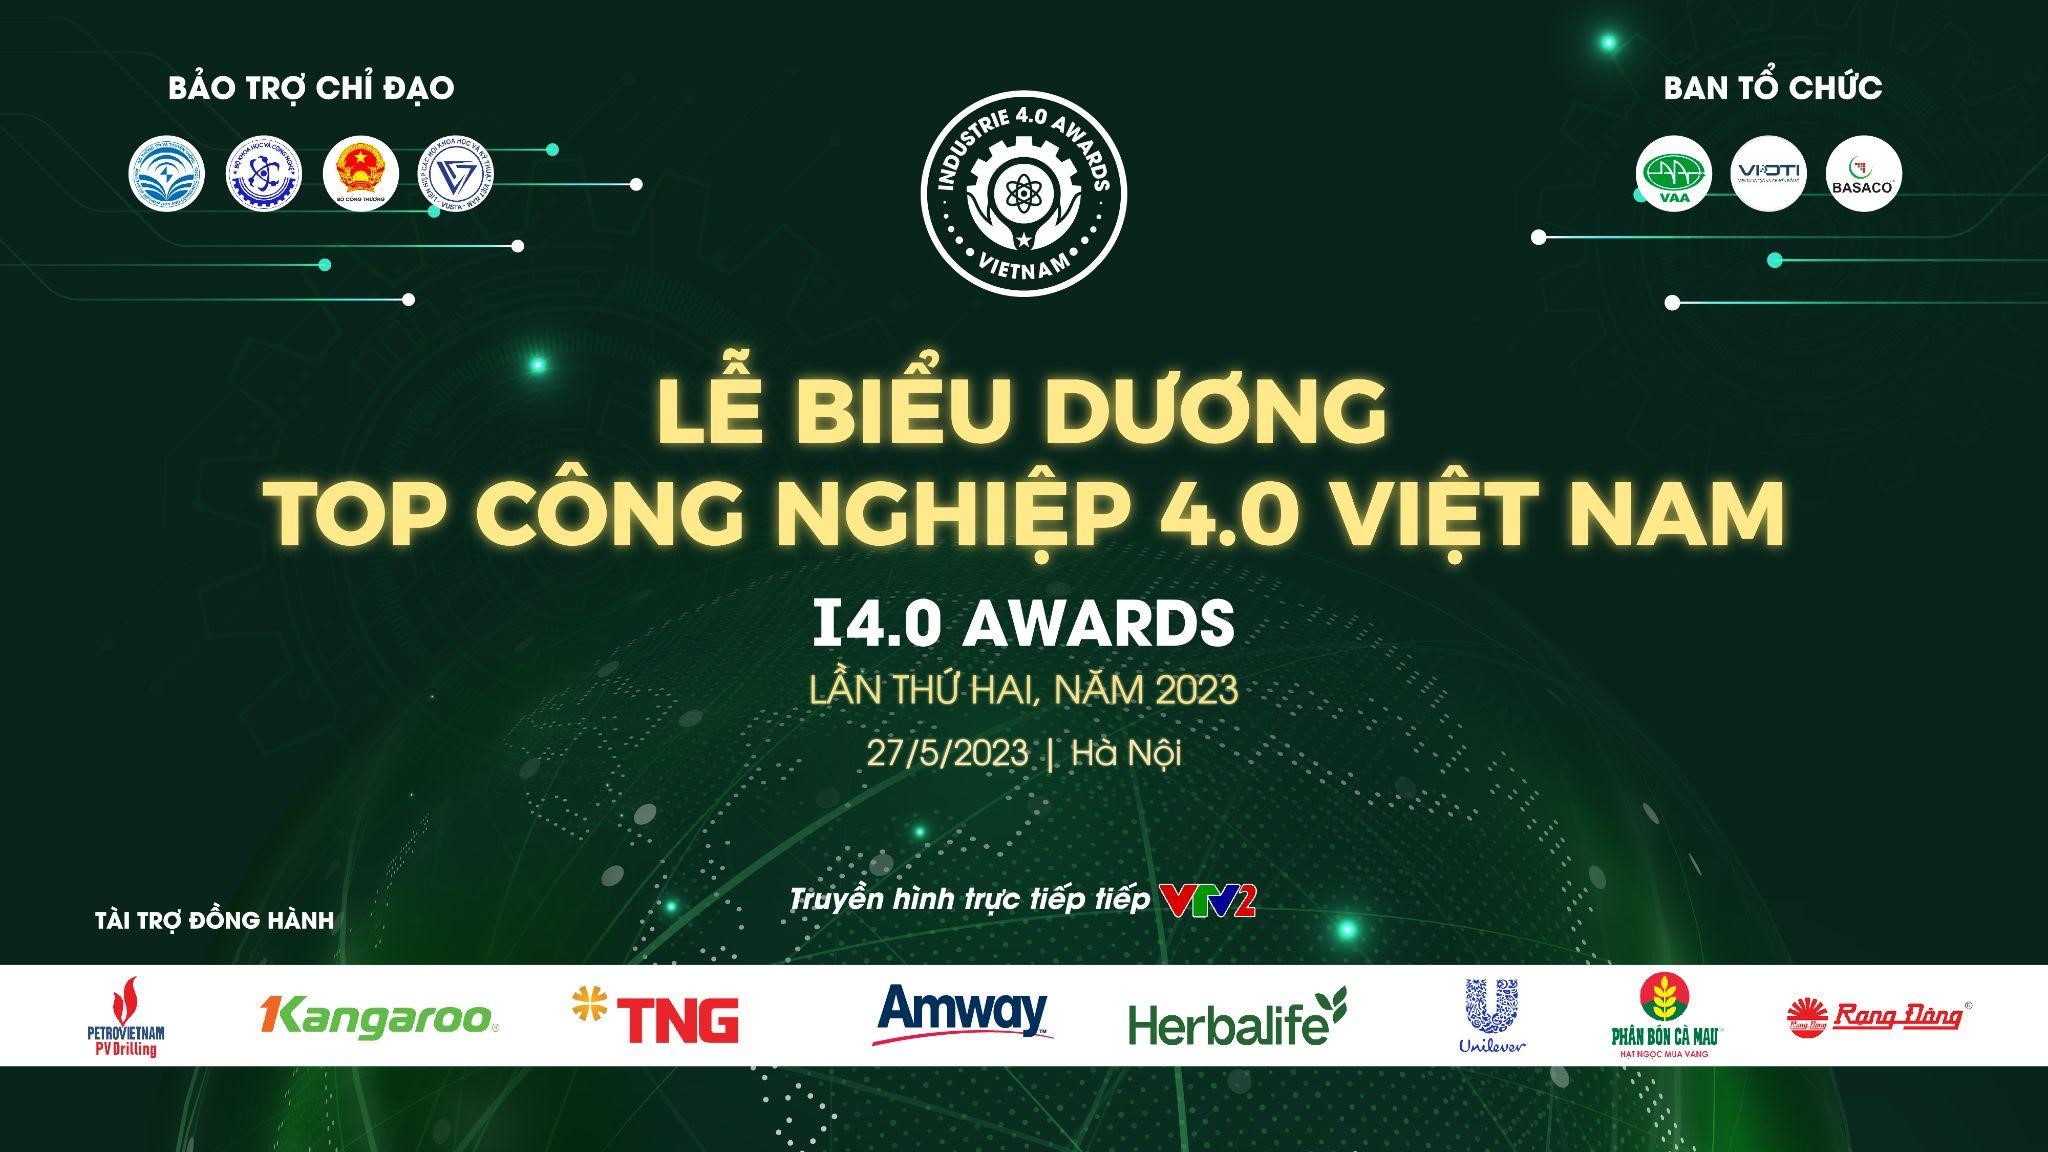 Vinh danh 65 đơn vị, doanh nghiệp tại TOP Công nghiệp 4.0 Việt Nam – I4.0 Awards năm 2023 